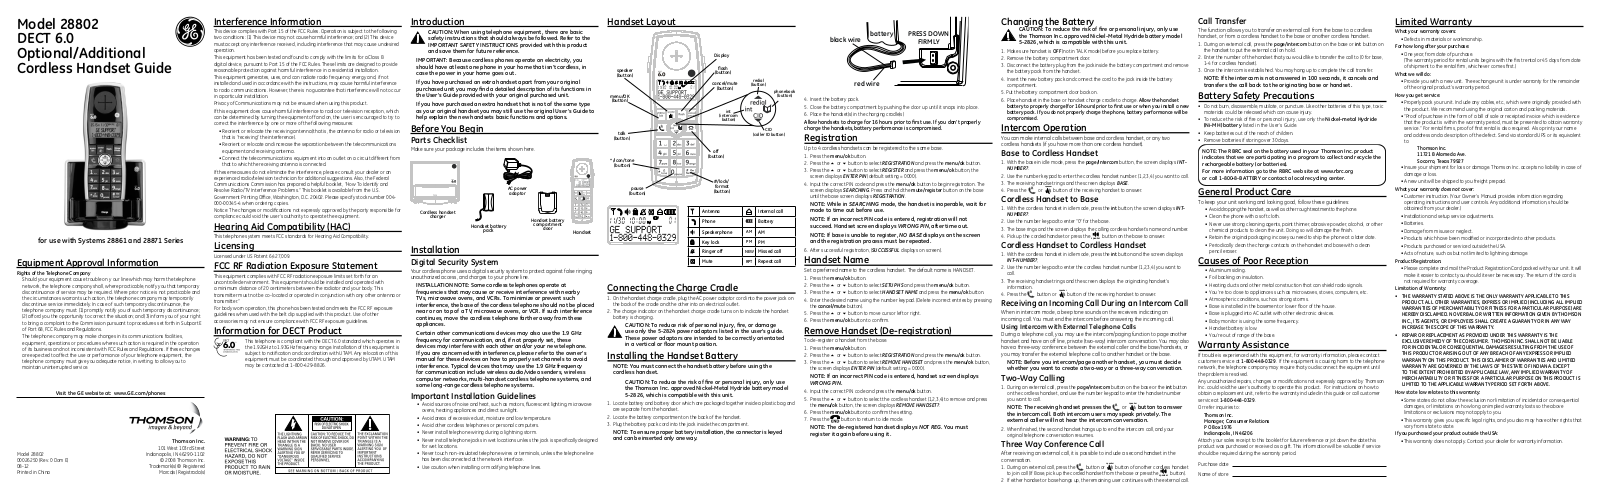 GE 28802 User Manual